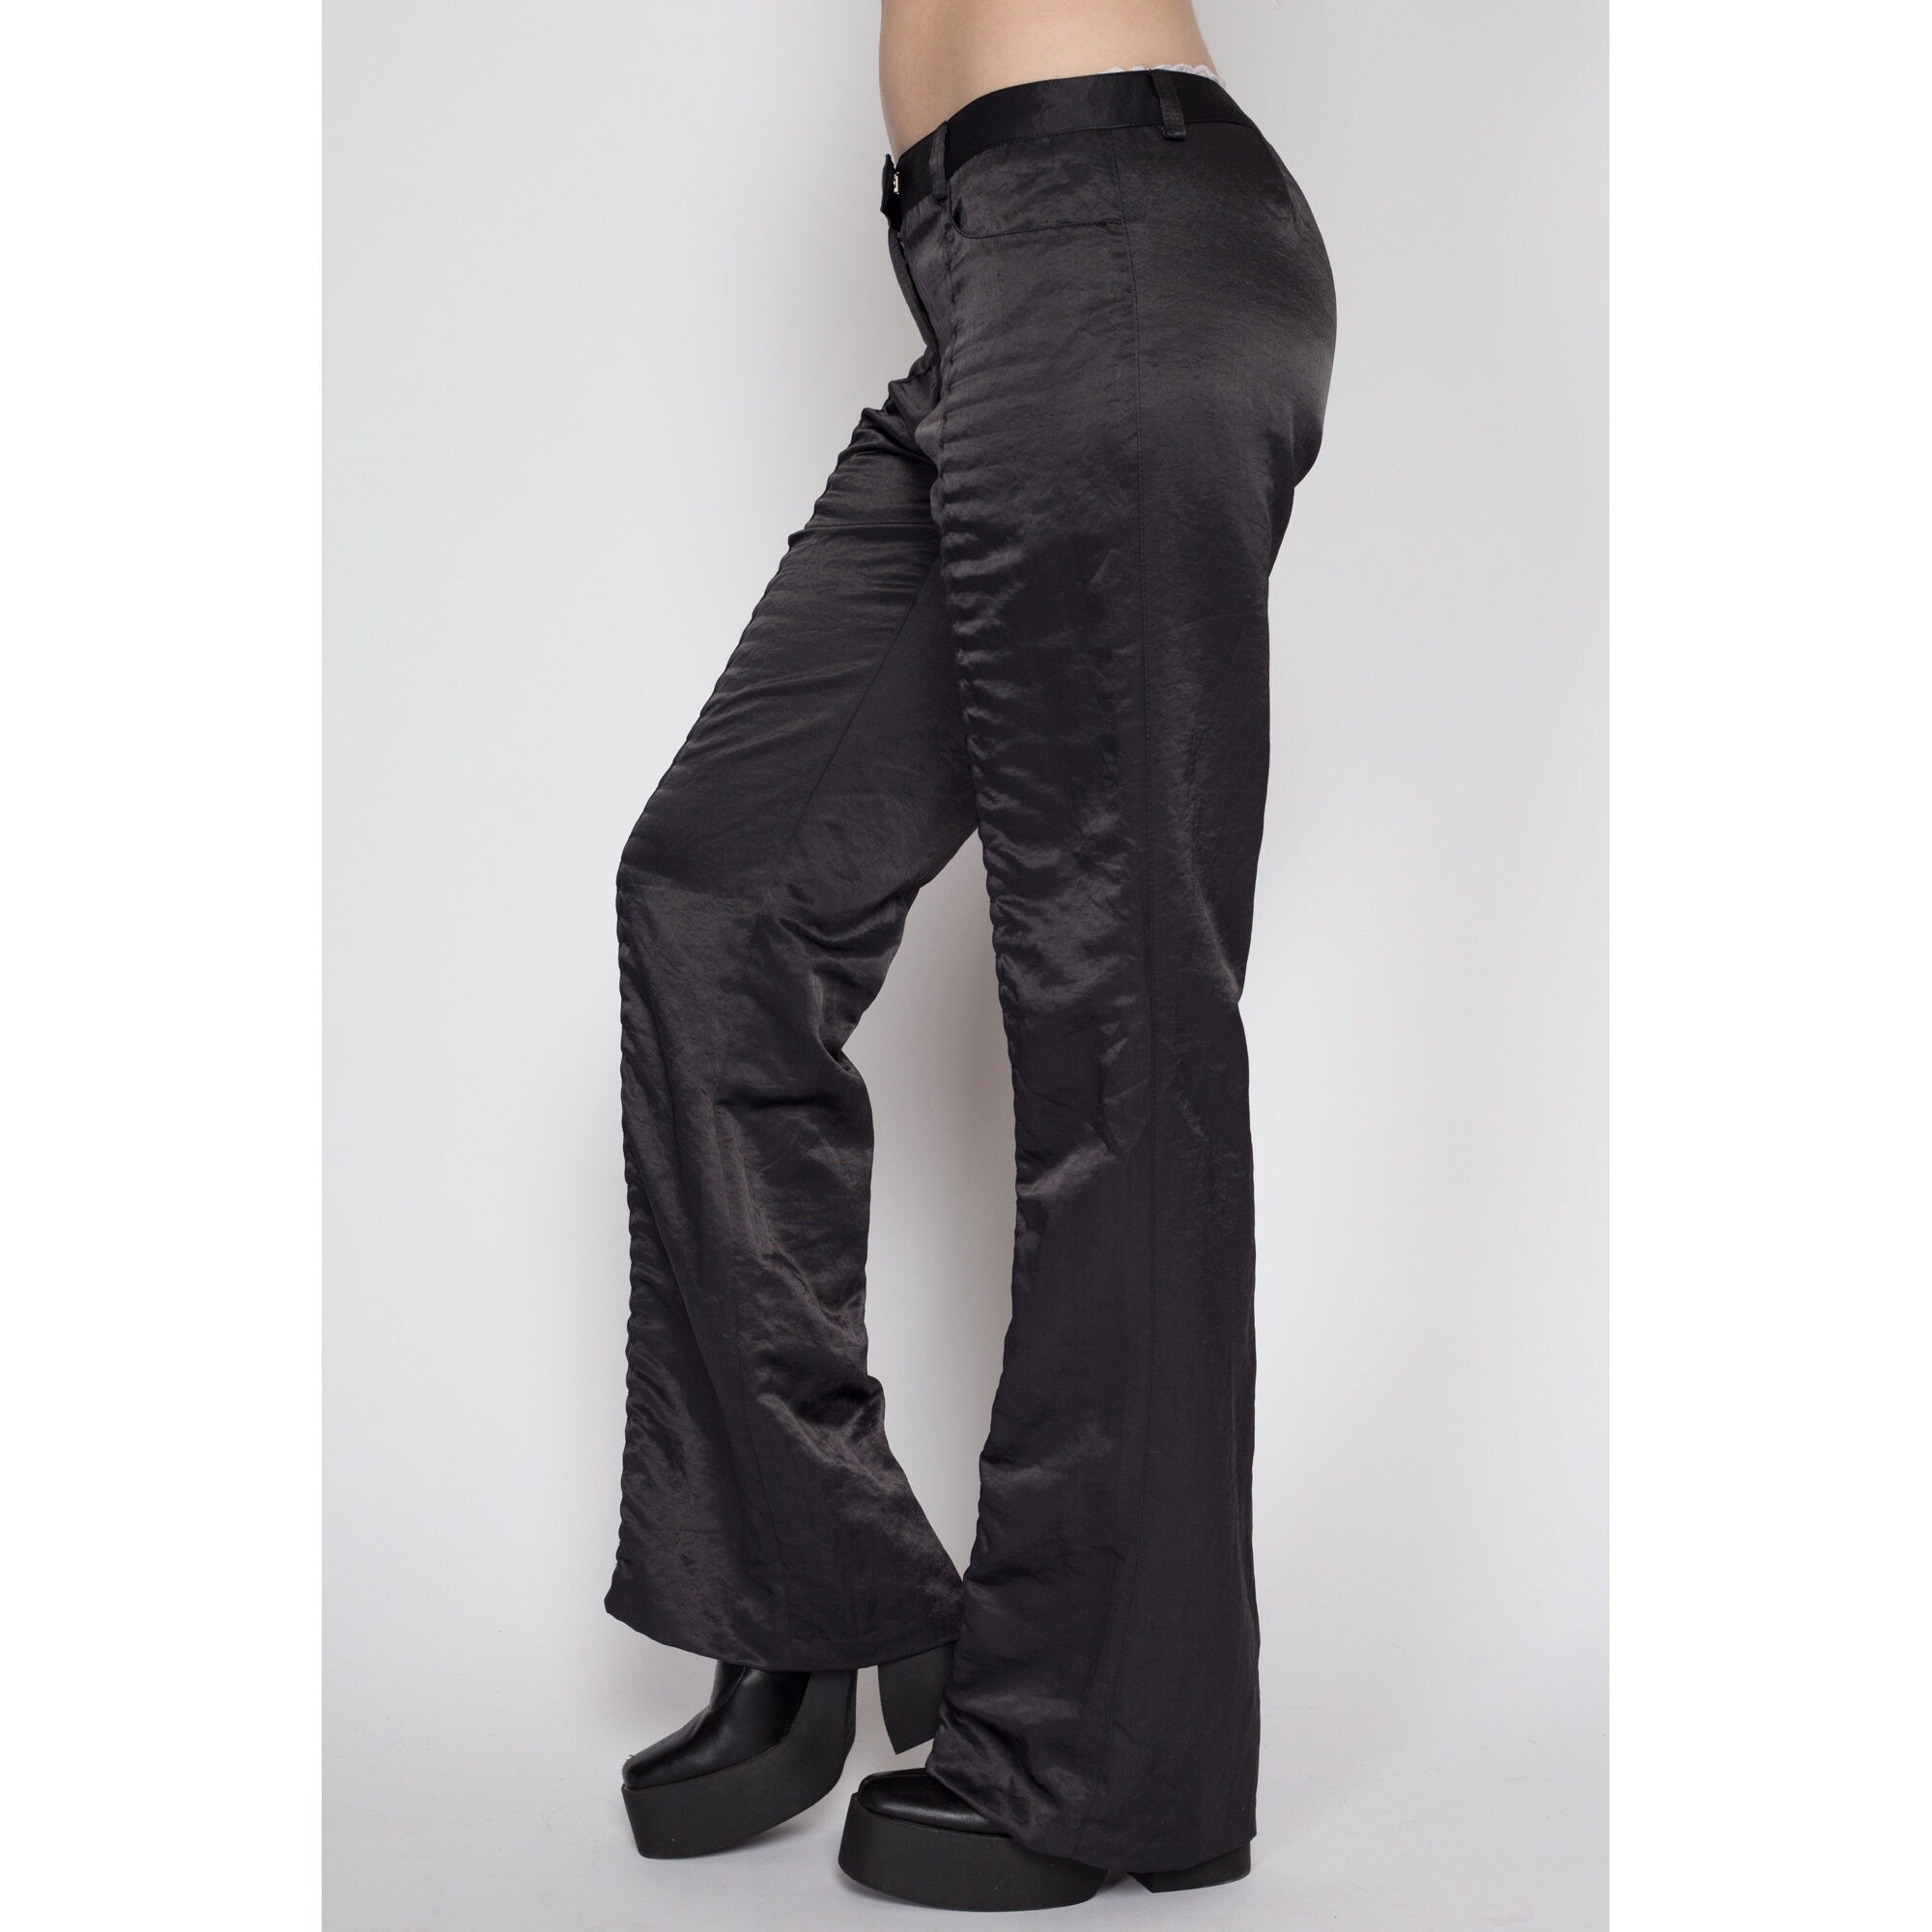 Vintage 90s Black Plaid Flare Pants - XS – Adult World Shop